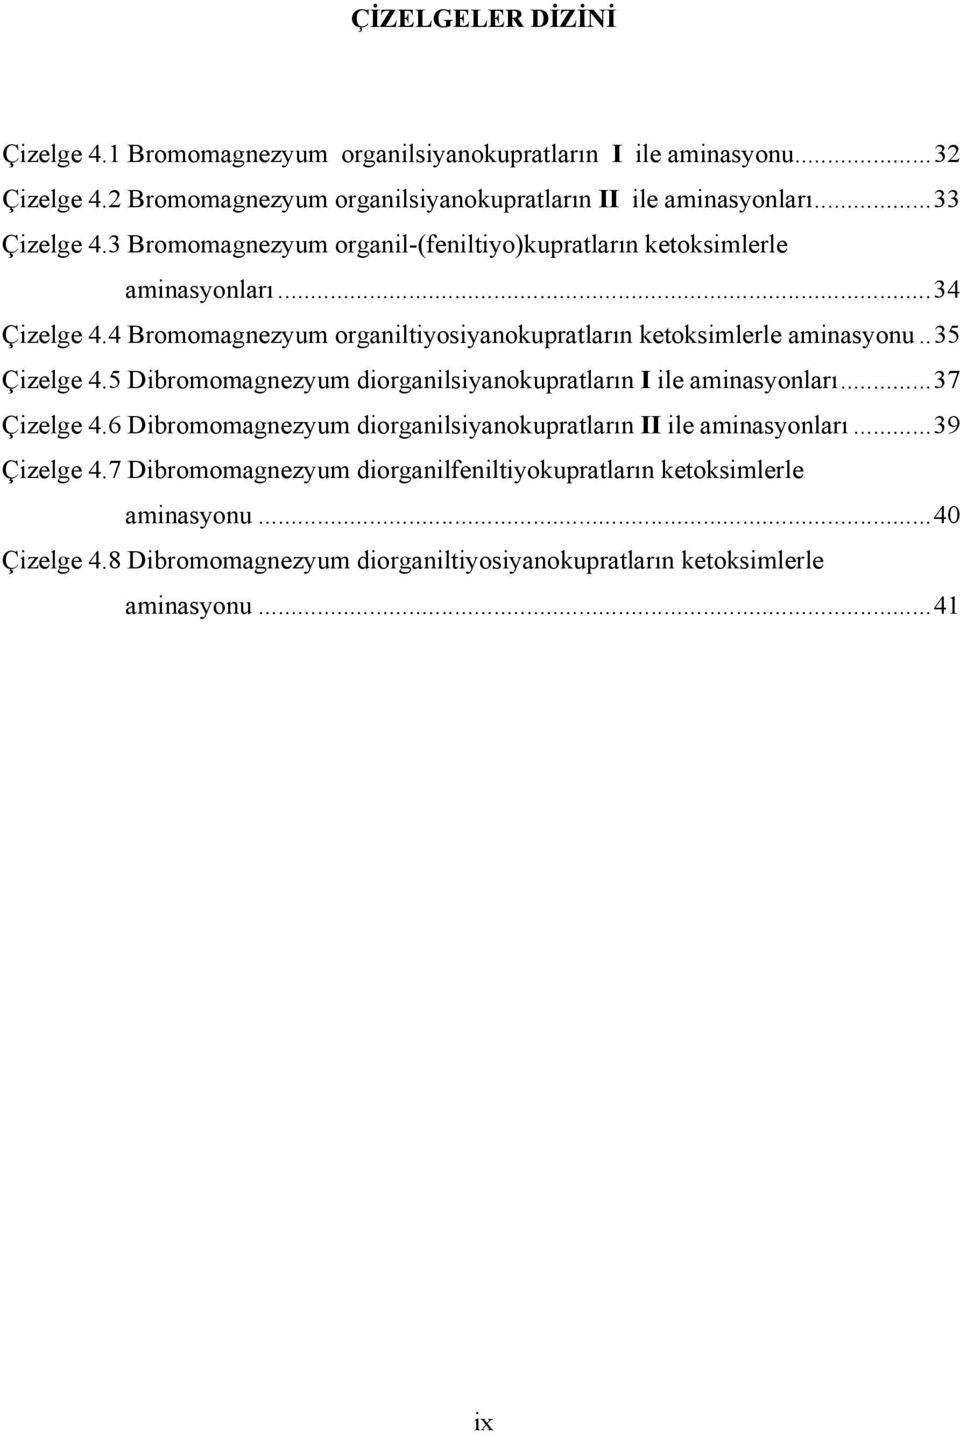 4 Bromomagnezyum organiltiyosiyanokupratların ketoksimlerle aminasyonu.. 35 Çizelge 4.5 Dibromomagnezyum diorganilsiyanokupratların I ile aminasyonları... 37 Çizelge 4.